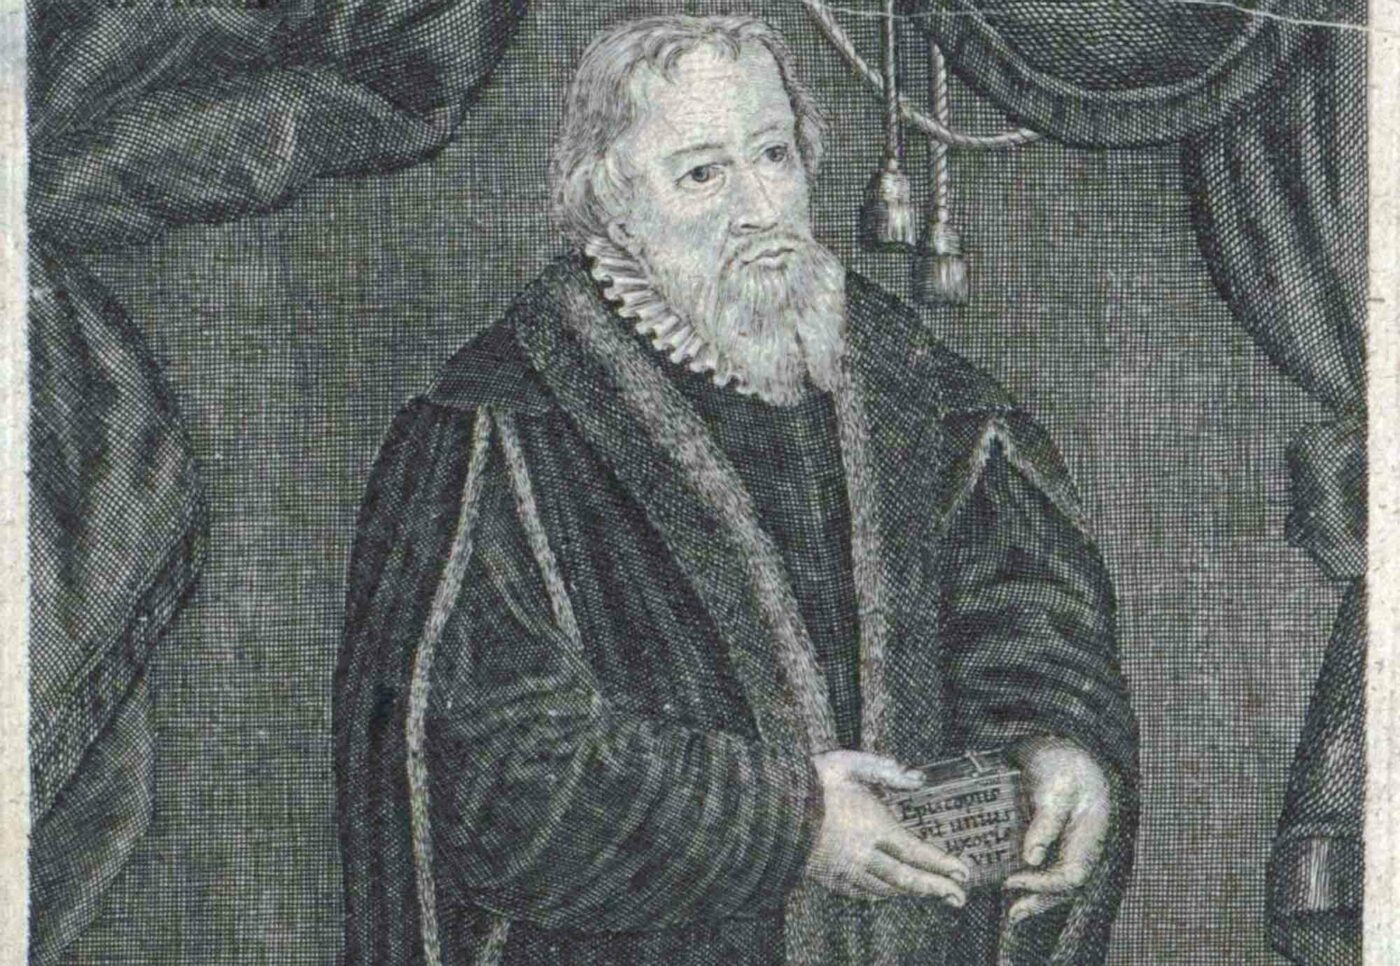 Der aus Feldkirch stammende Pfarrer Bernhardi ließ sich als erster Pfarrer der Reformationszeit trauen. Foto: wikimedia/Johann Christoph Boecklin